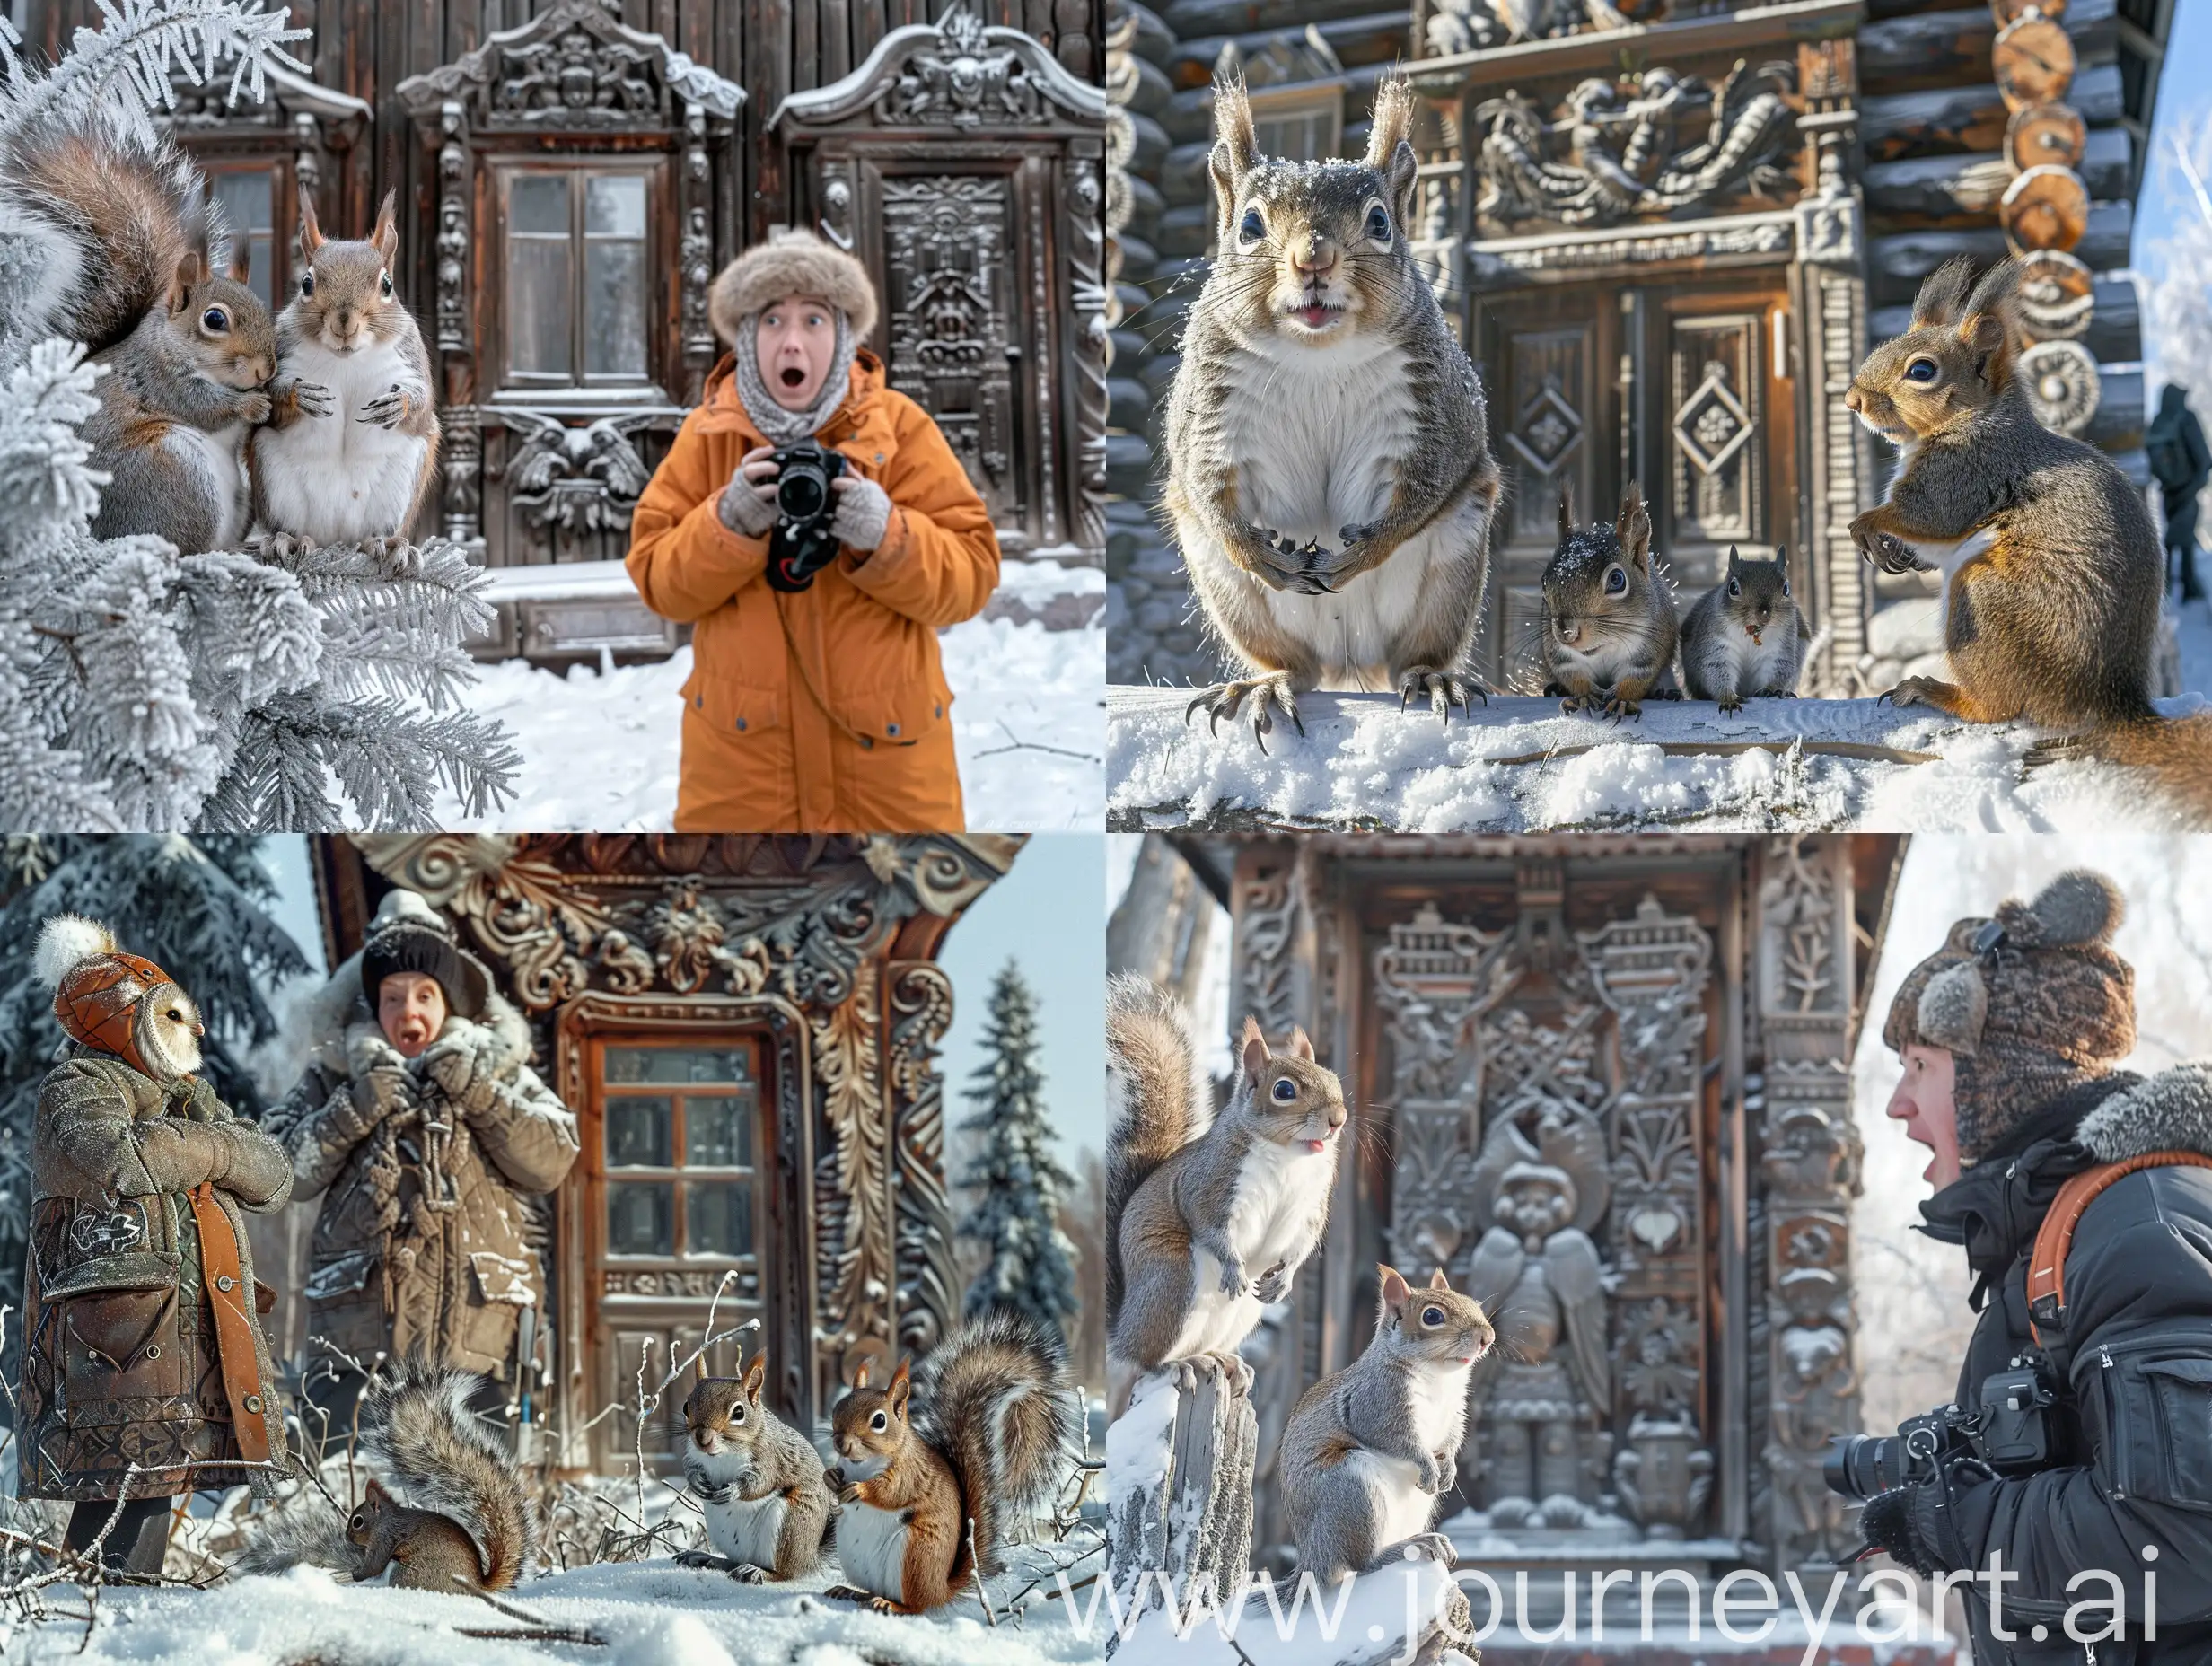 Фотореализм, репортажный снимок. Яркий морозный день в Сибири, в Томске на фоне столетнего резного деревянного дома стоит удивленный нелепо одетый фотограф. На елях рядом седят белки и филин. Веселое настроение.